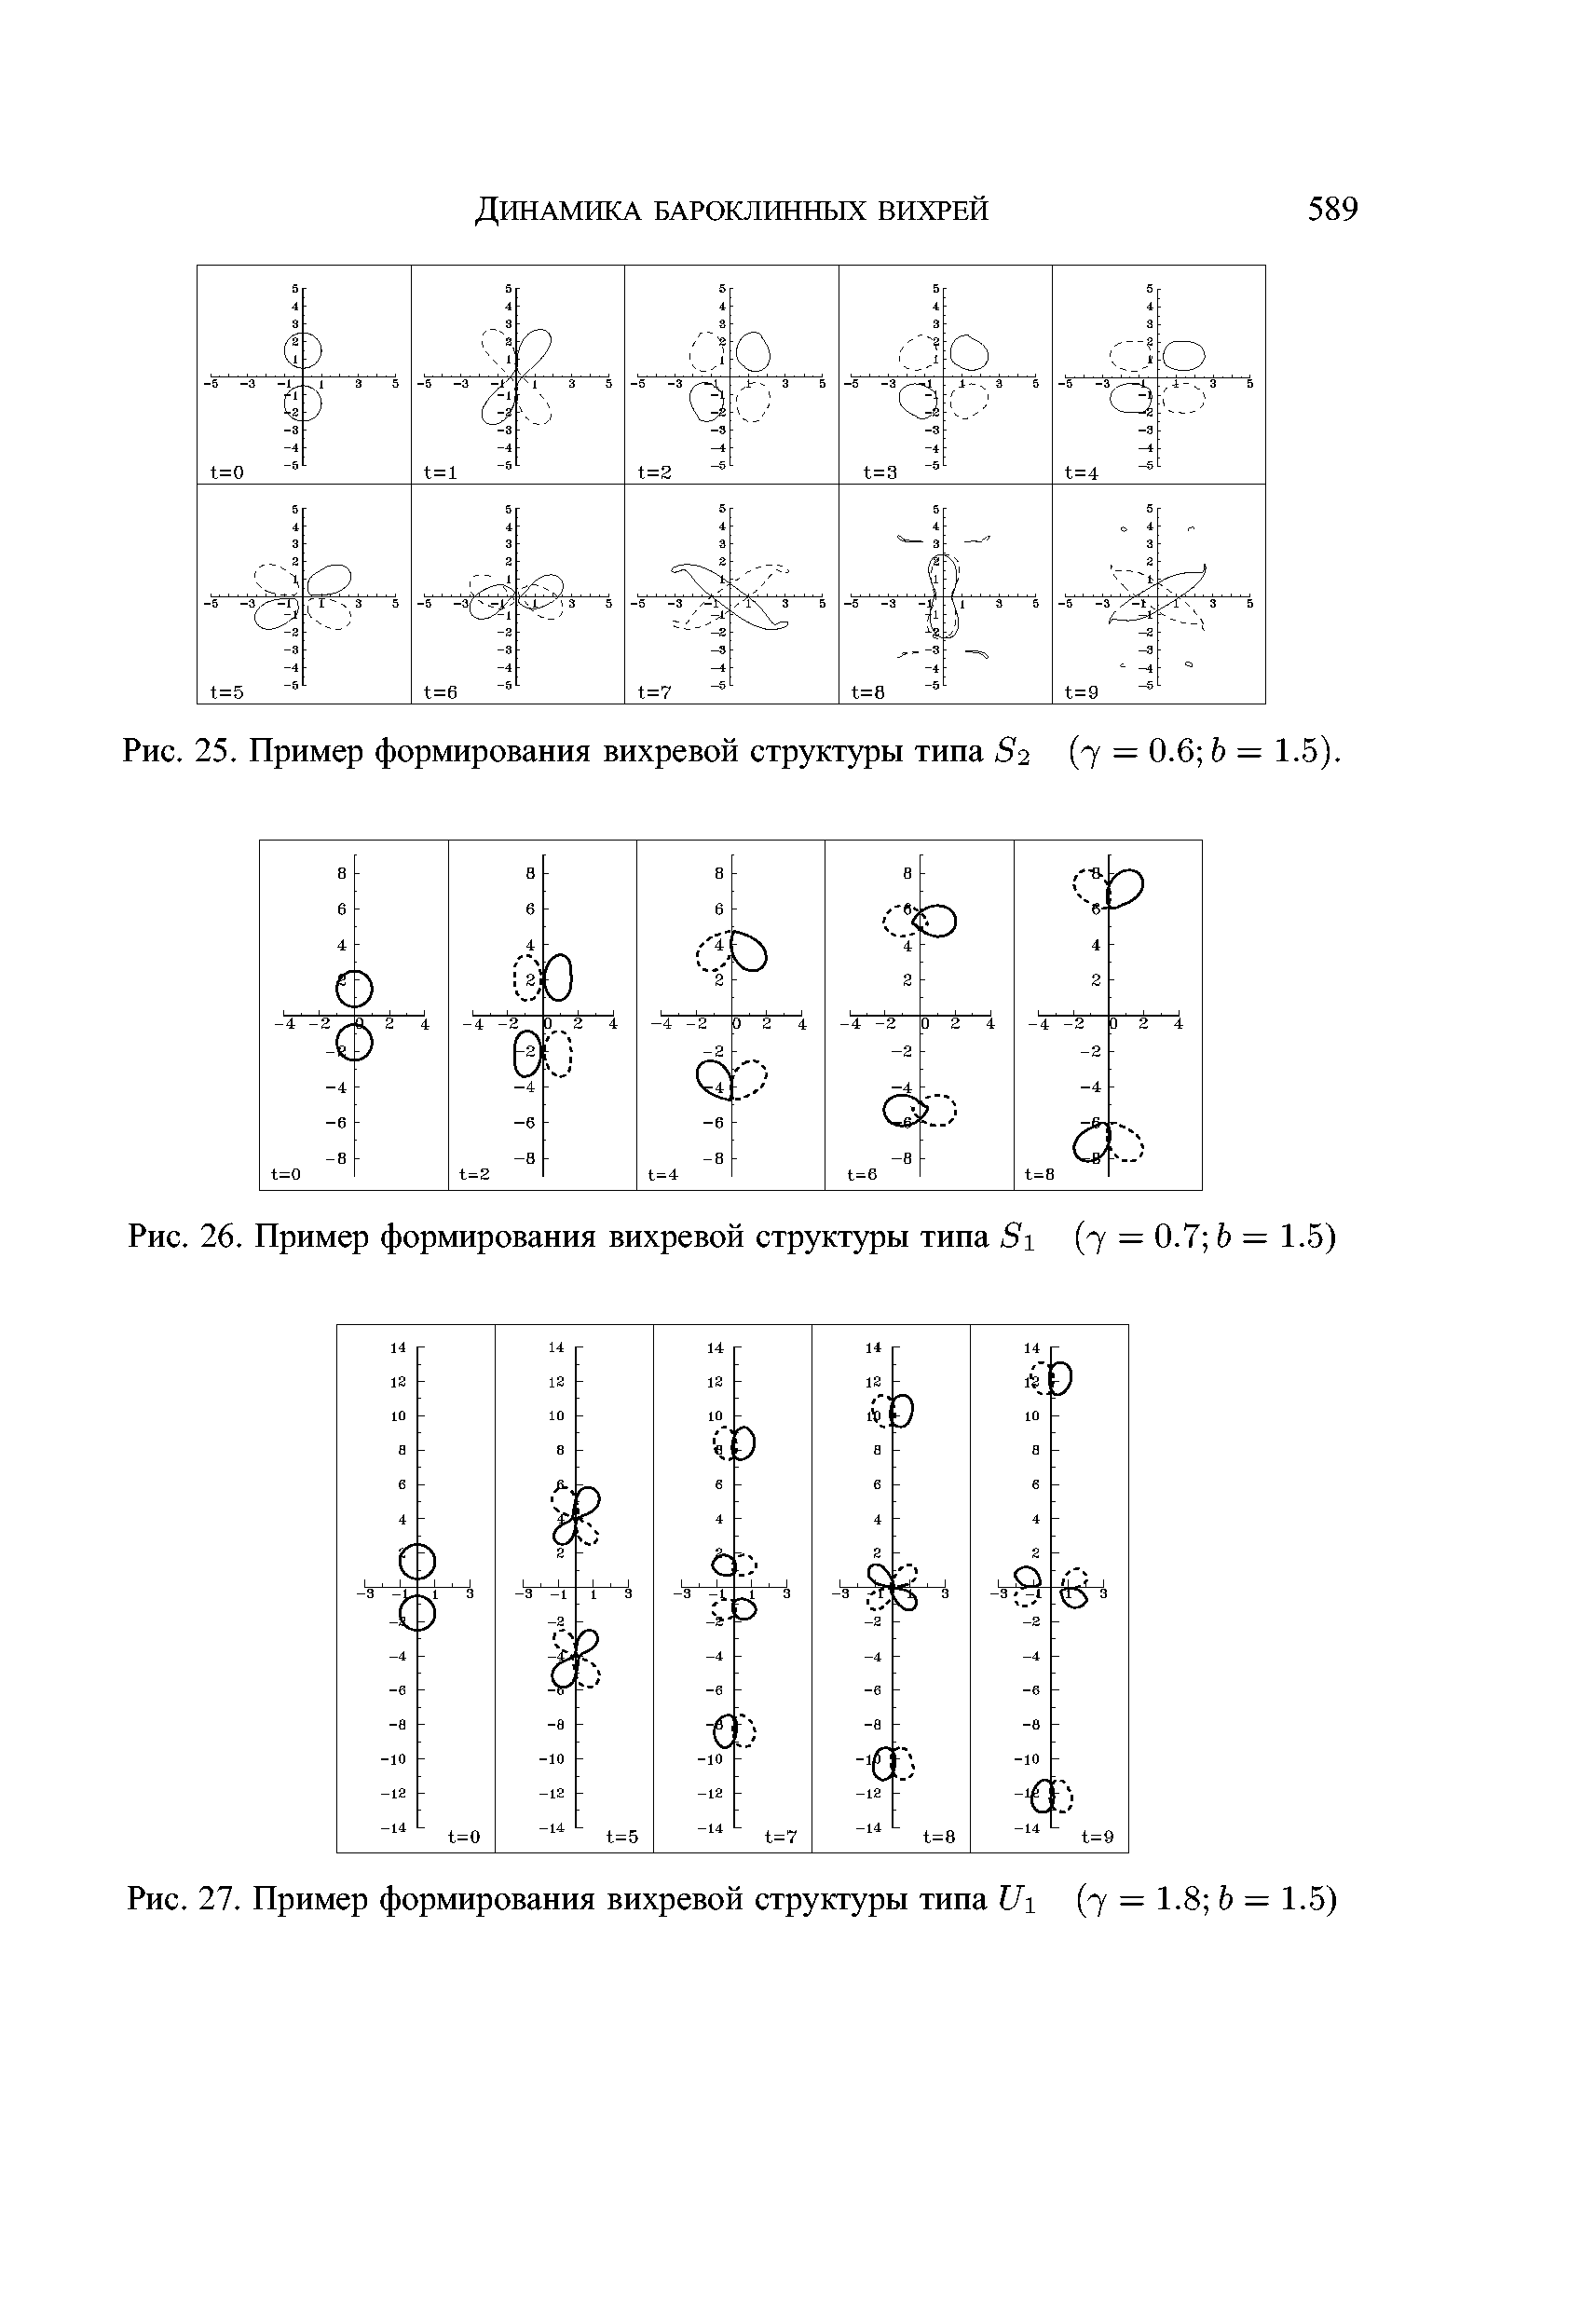 Рис. 25. Пример формирования вихревой структуры типа 82 (7 = 0.6 Ь = 1.5).
